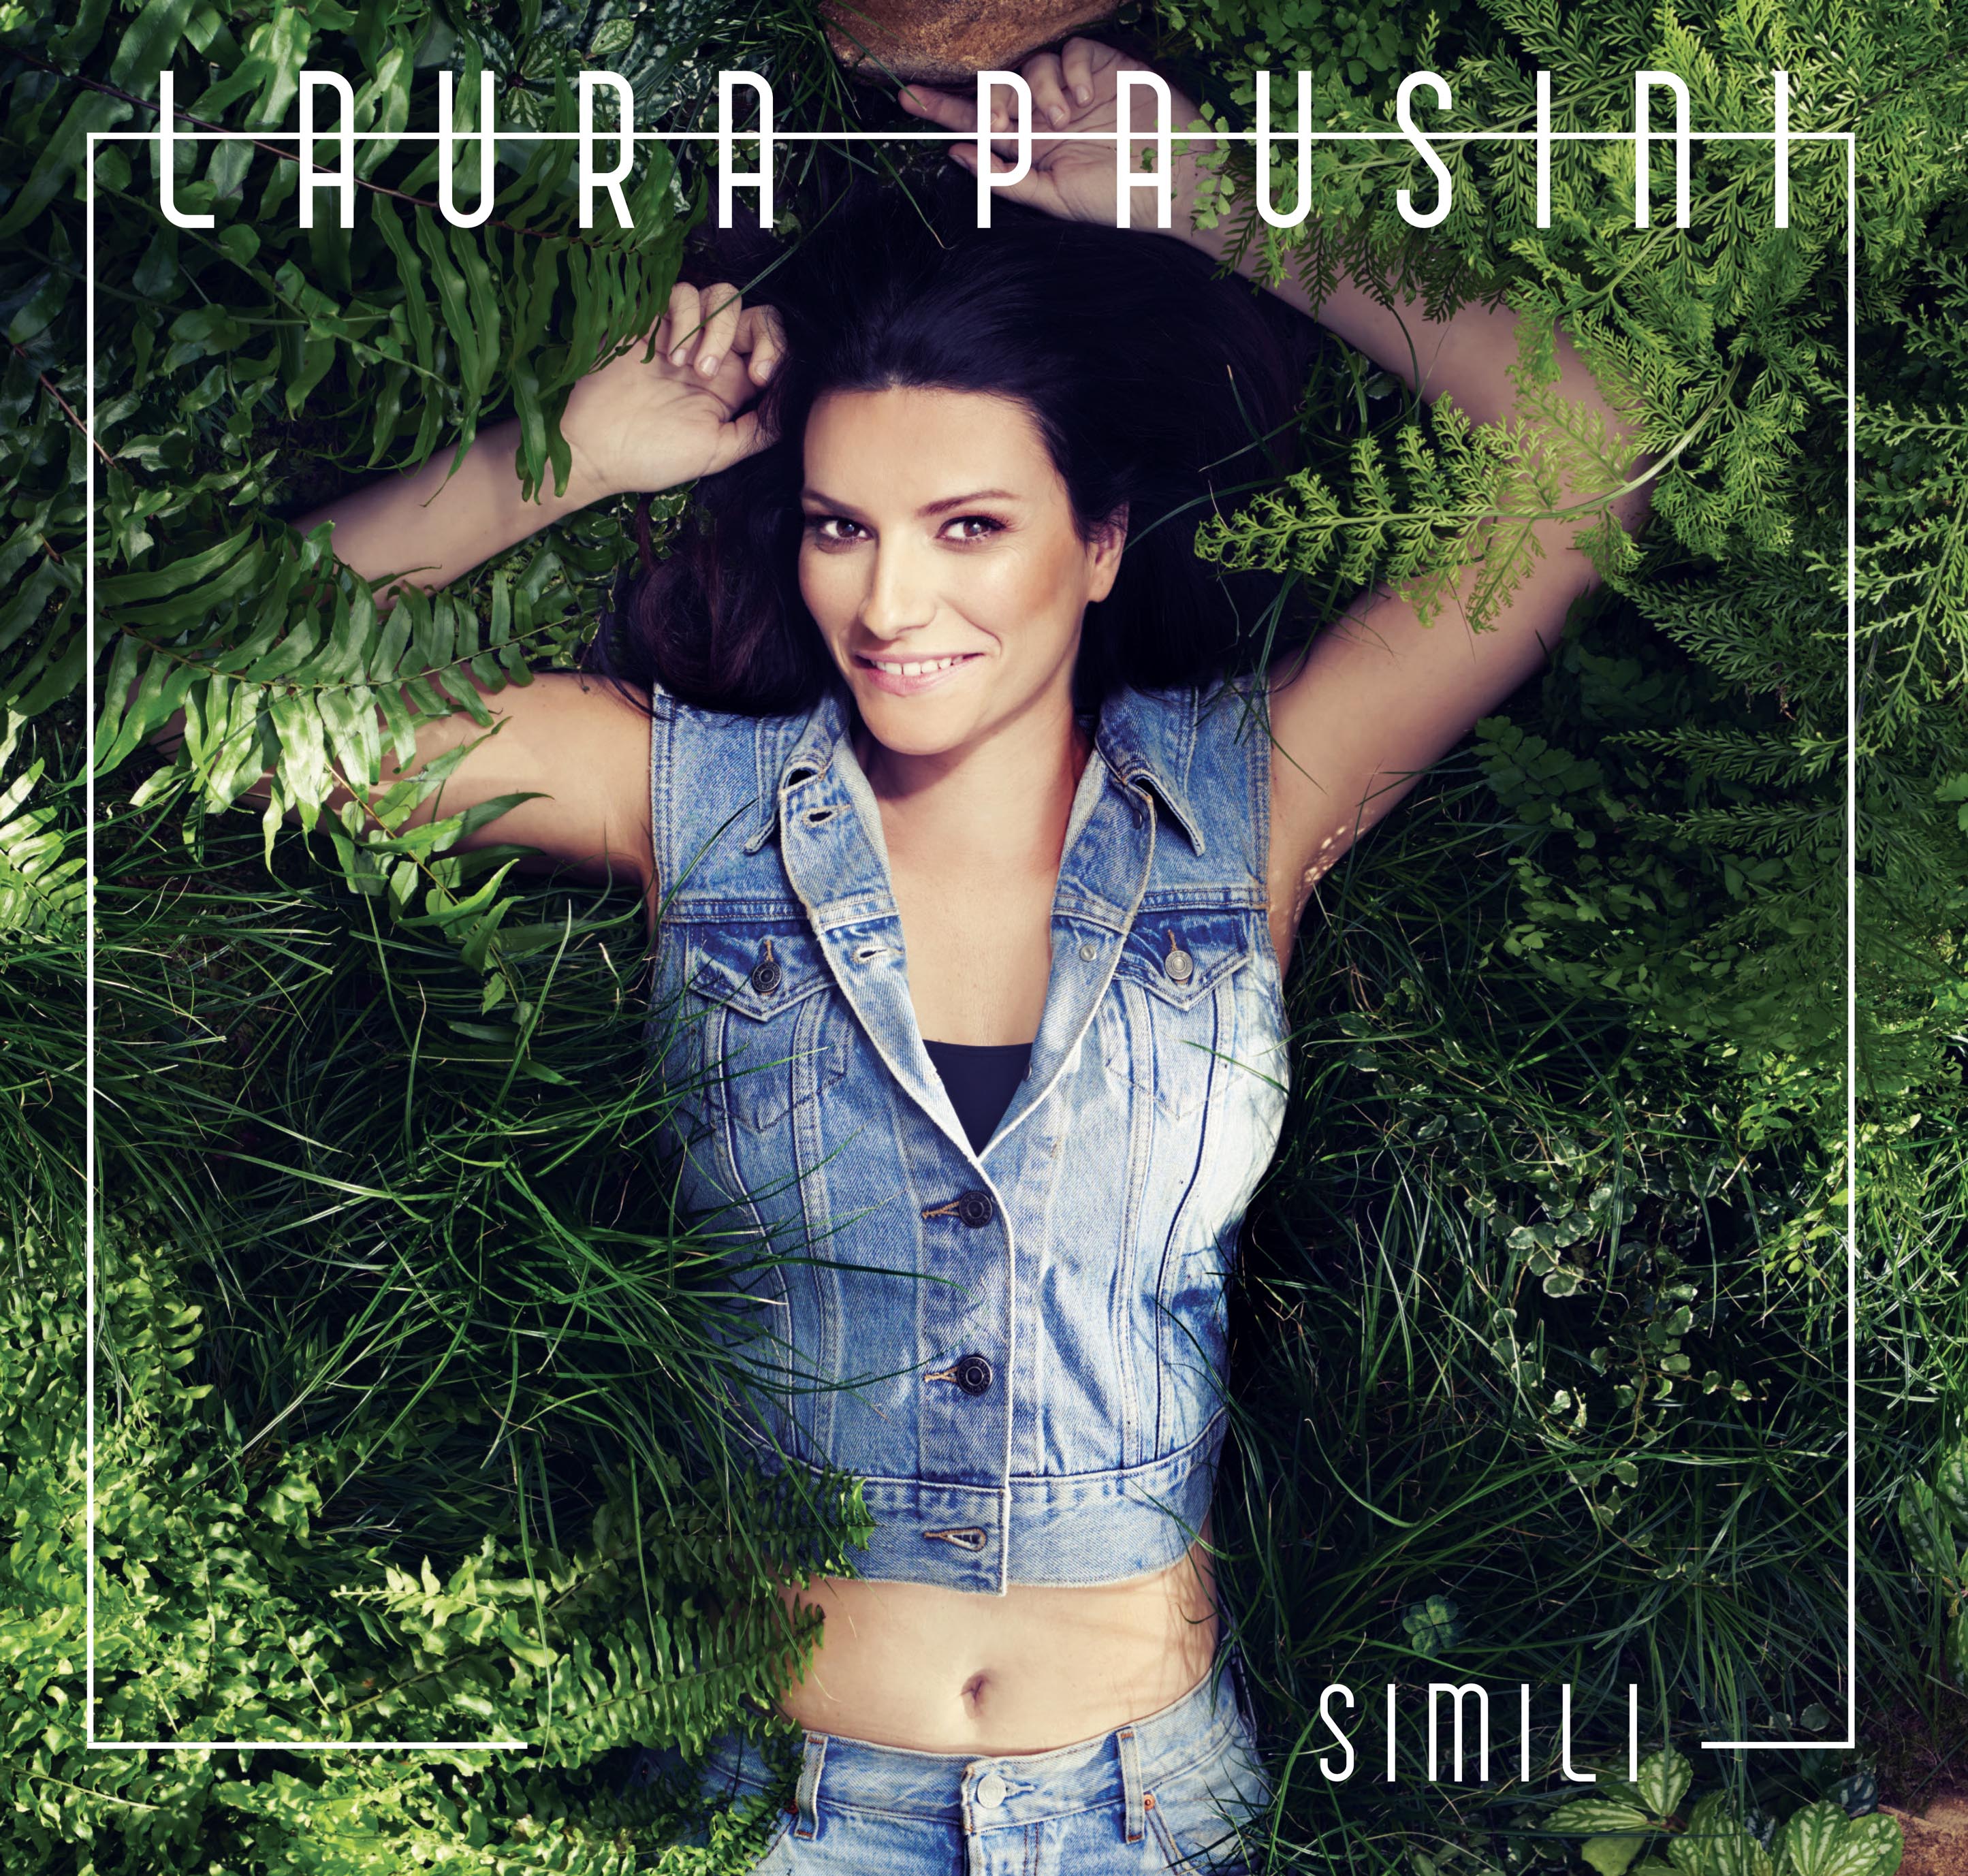  Laura Pausini, da venerdì in radio il nuovo singolo “Simili”